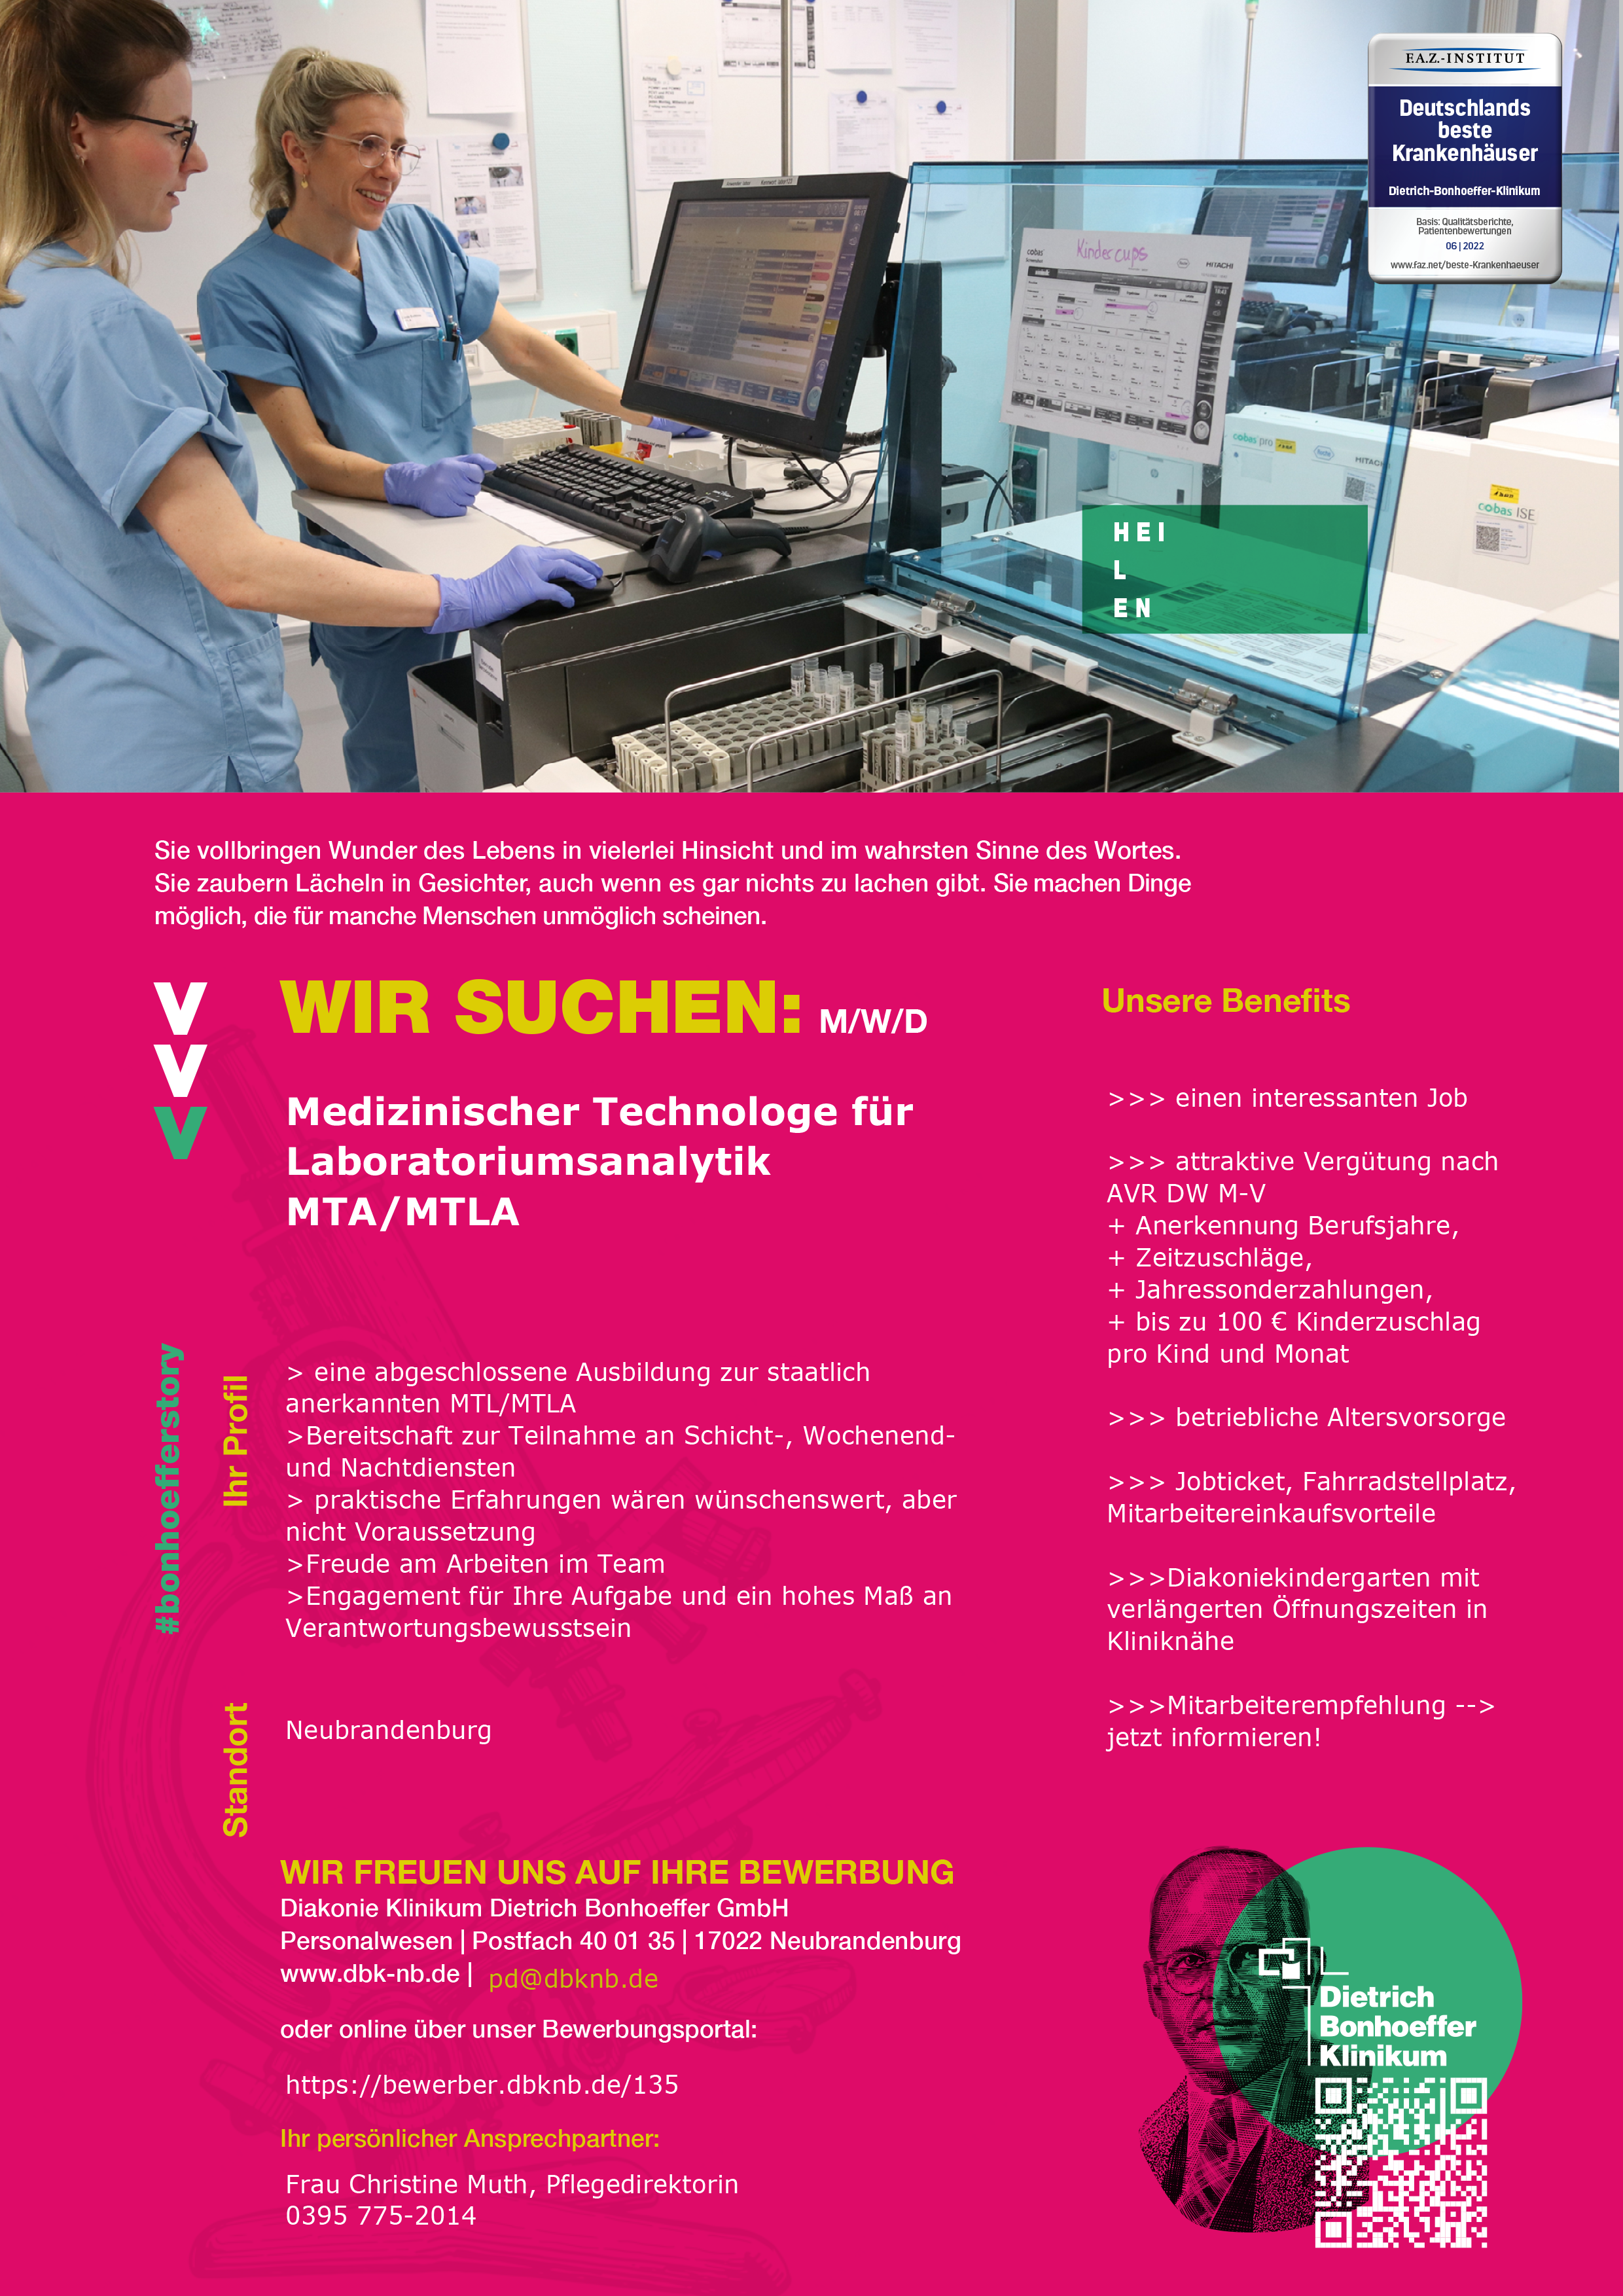 Dietrich-Bonhoeffer-Klinikum Neubrandenburg Medizinische/r Technologin/Technologe (m/w/d) für Laboratoriums Analytik MTA/MTLA stellencompass.de